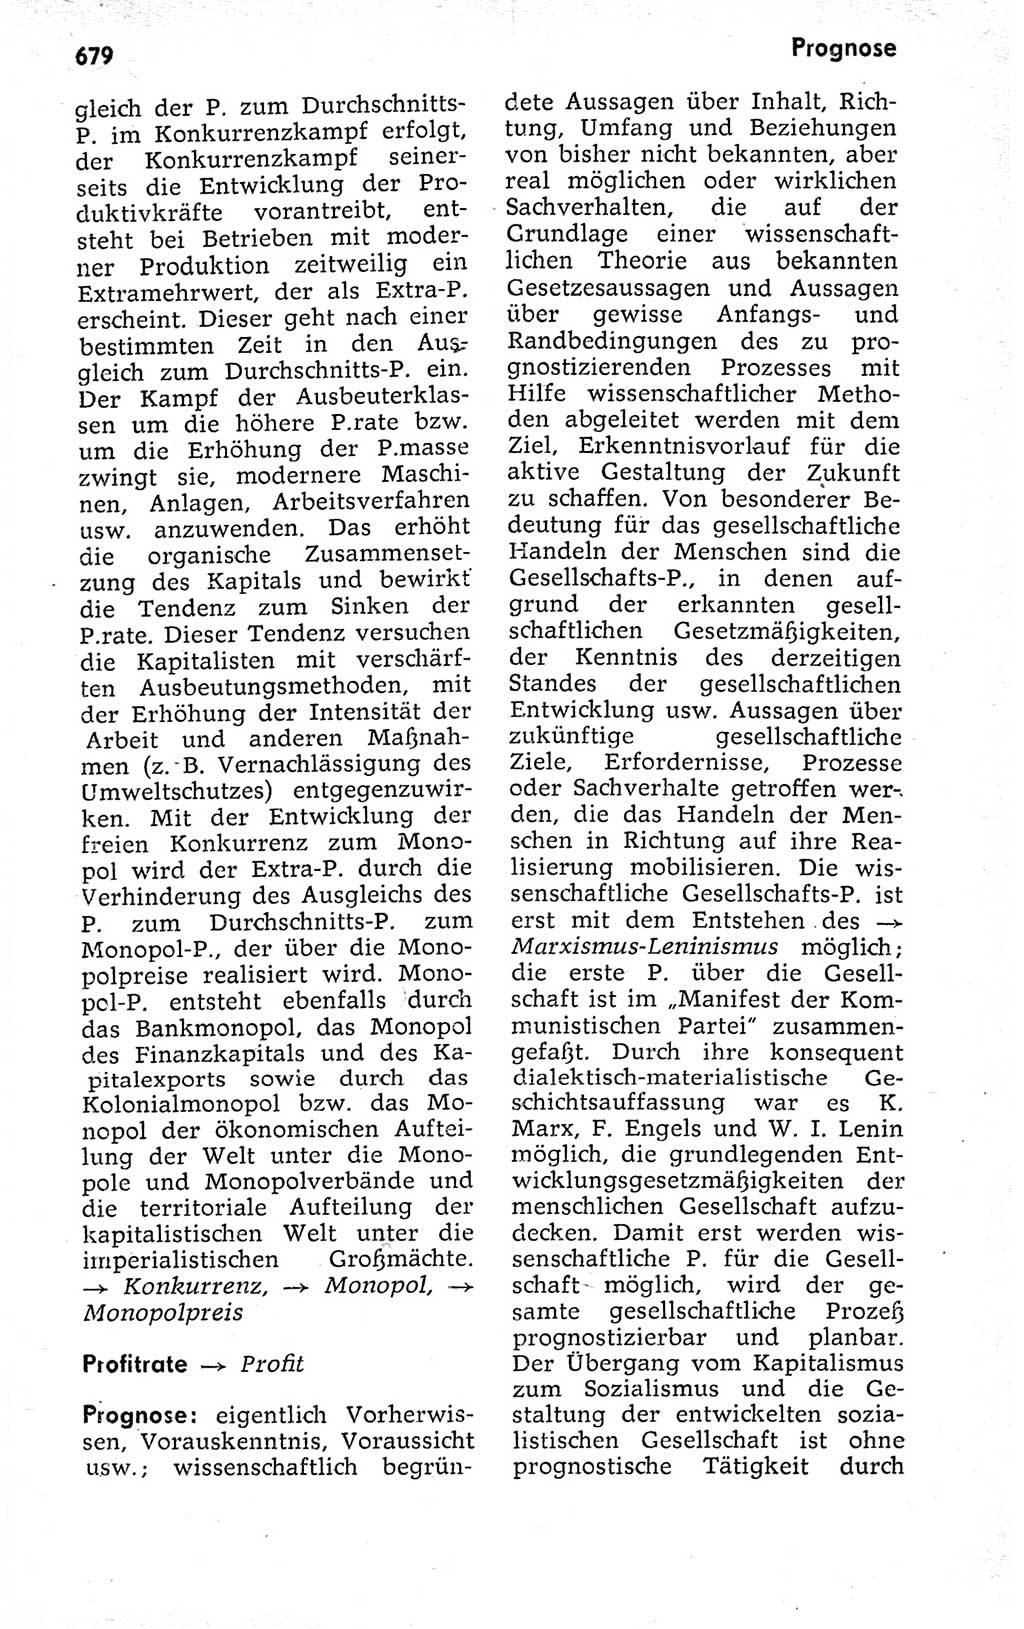 Kleines politisches Wörterbuch [Deutsche Demokratische Republik (DDR)] 1973, Seite 679 (Kl. pol. Wb. DDR 1973, S. 679)